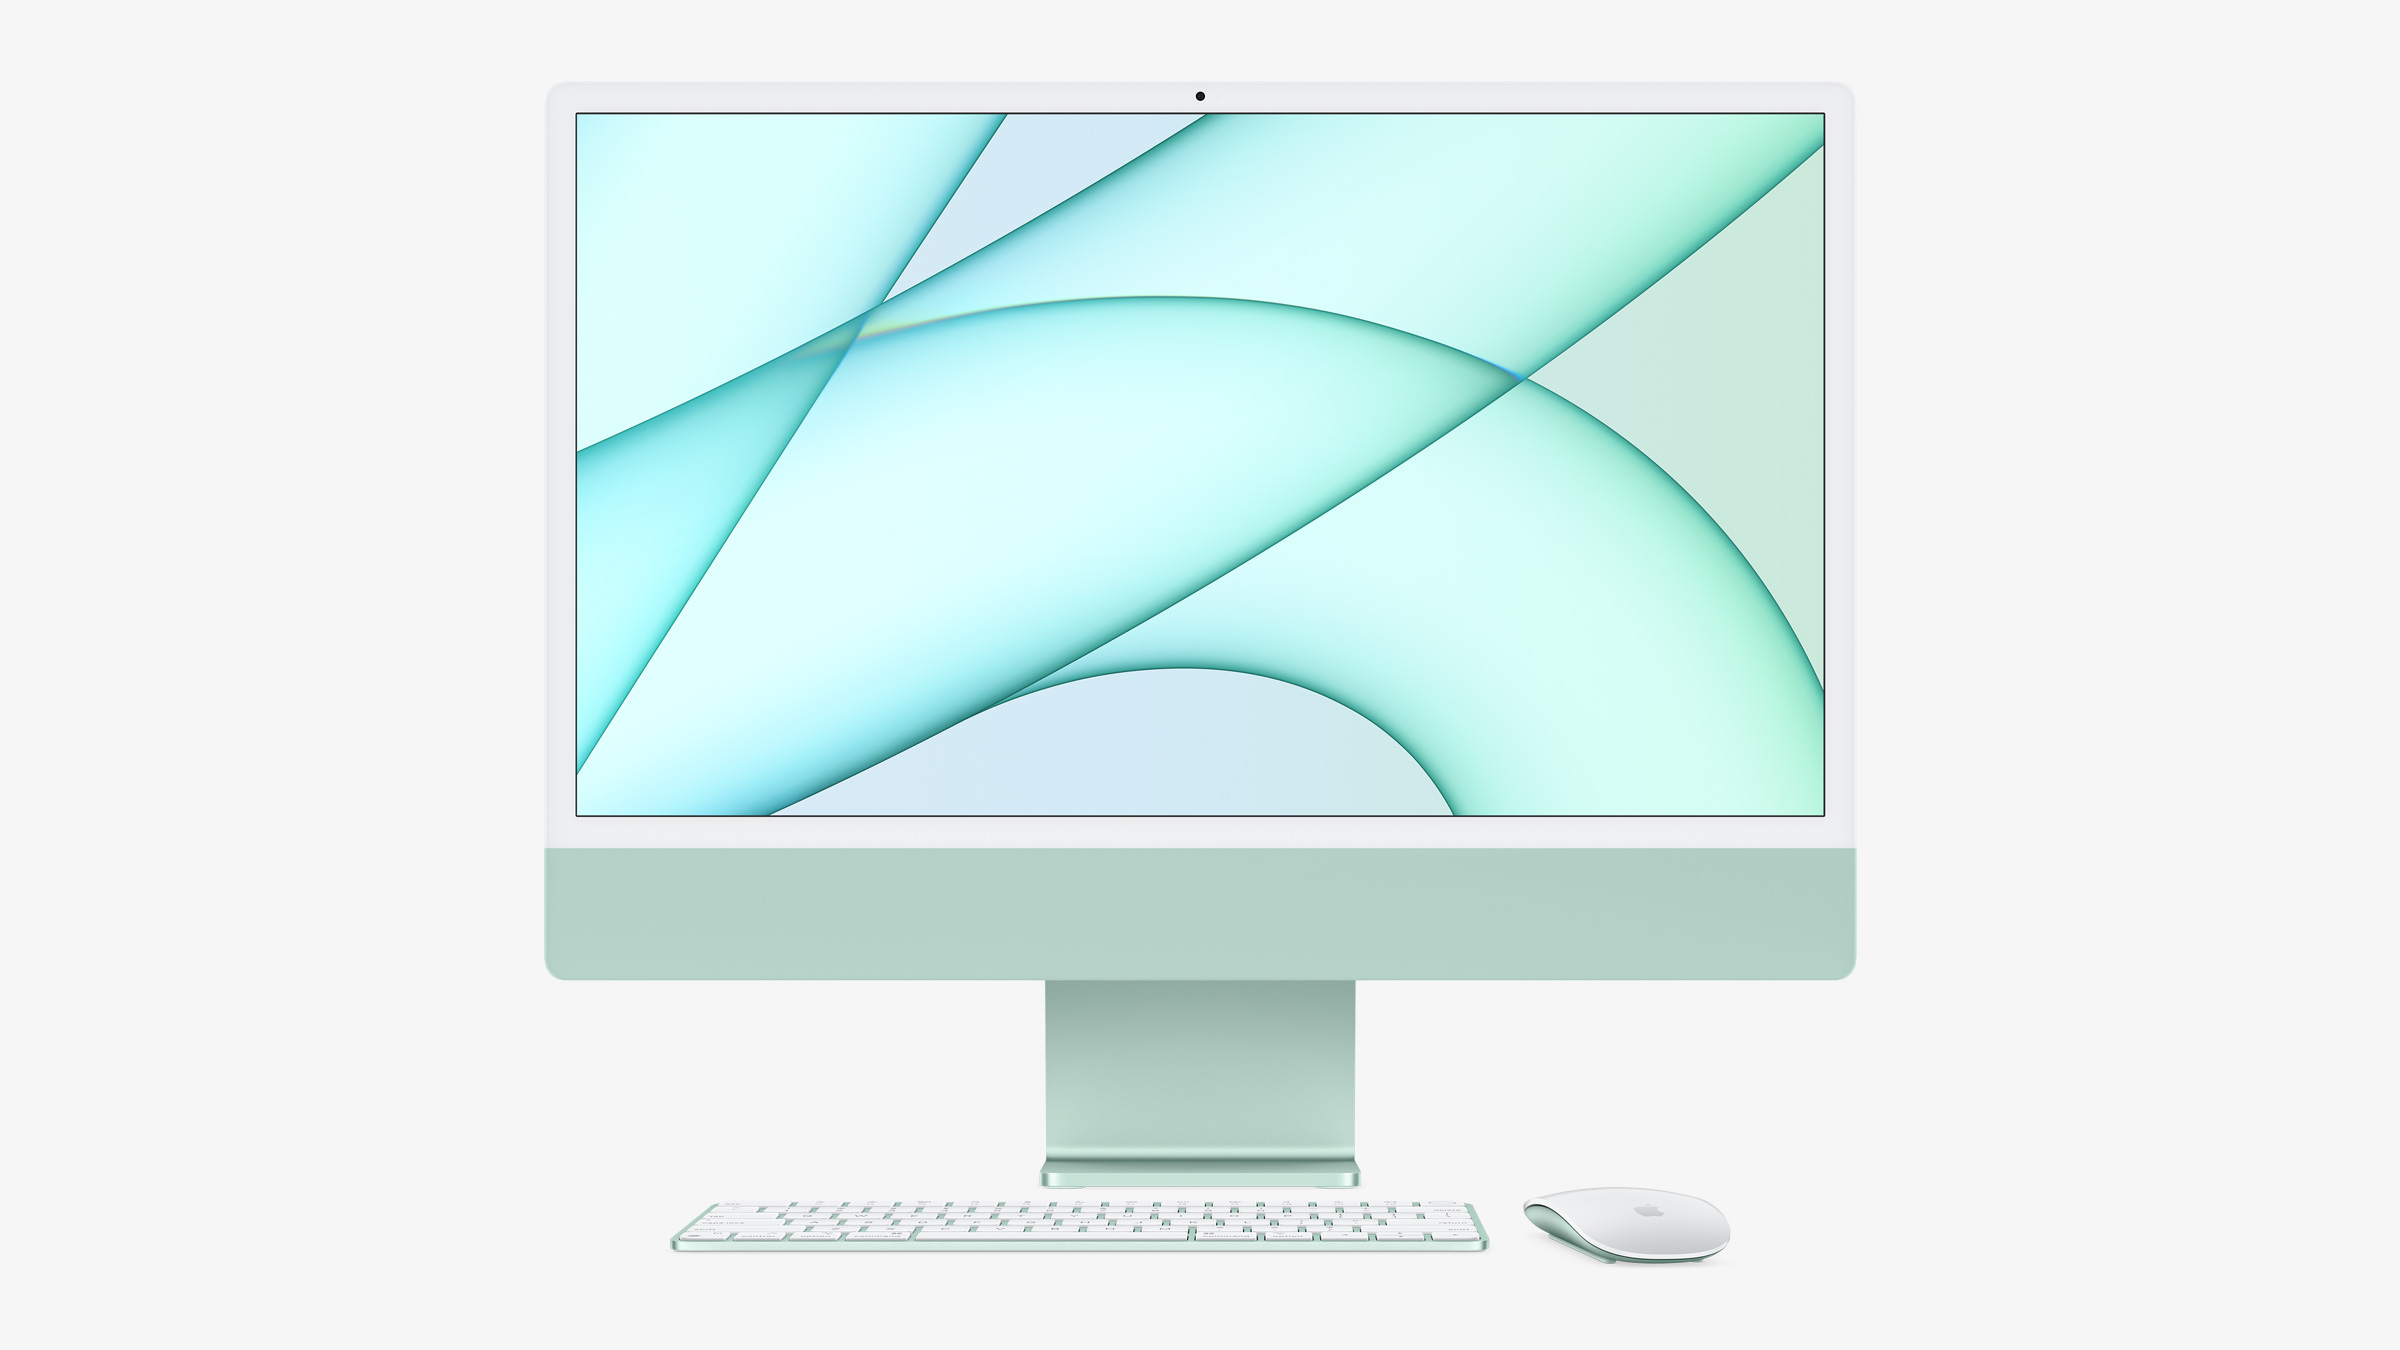 2021 全新 iMac 發布！以為只是台超薄螢幕但卻是超強電腦 | Apple M1, iMac, Pro Display XDR, Touch ID | iPhone News 愛瘋了